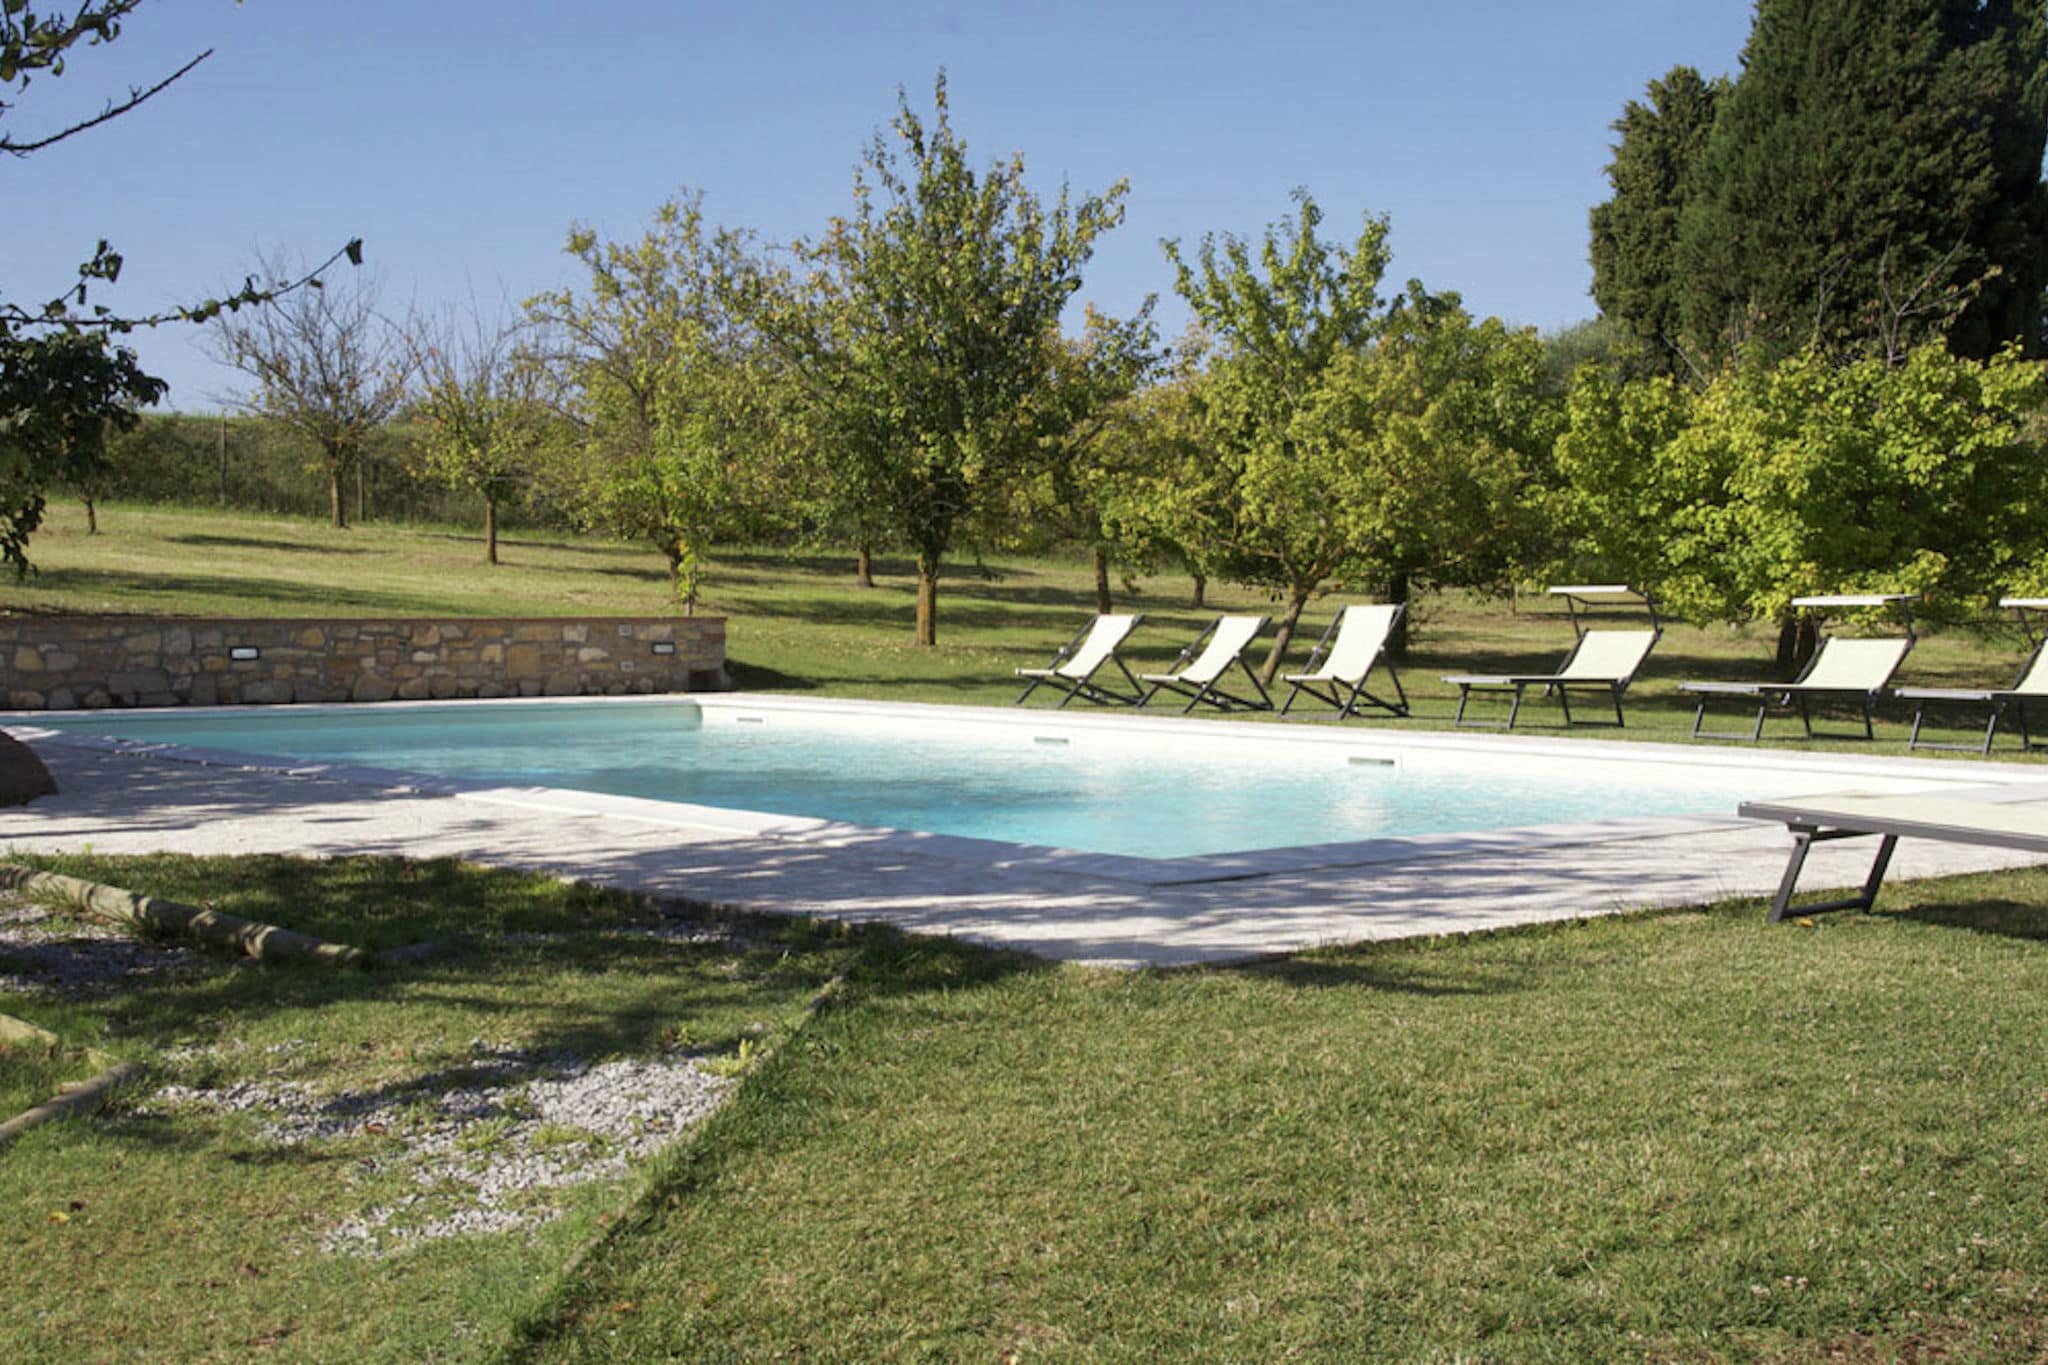 Élégante villa à Rapolano Terme, Italie, avec piscine privée